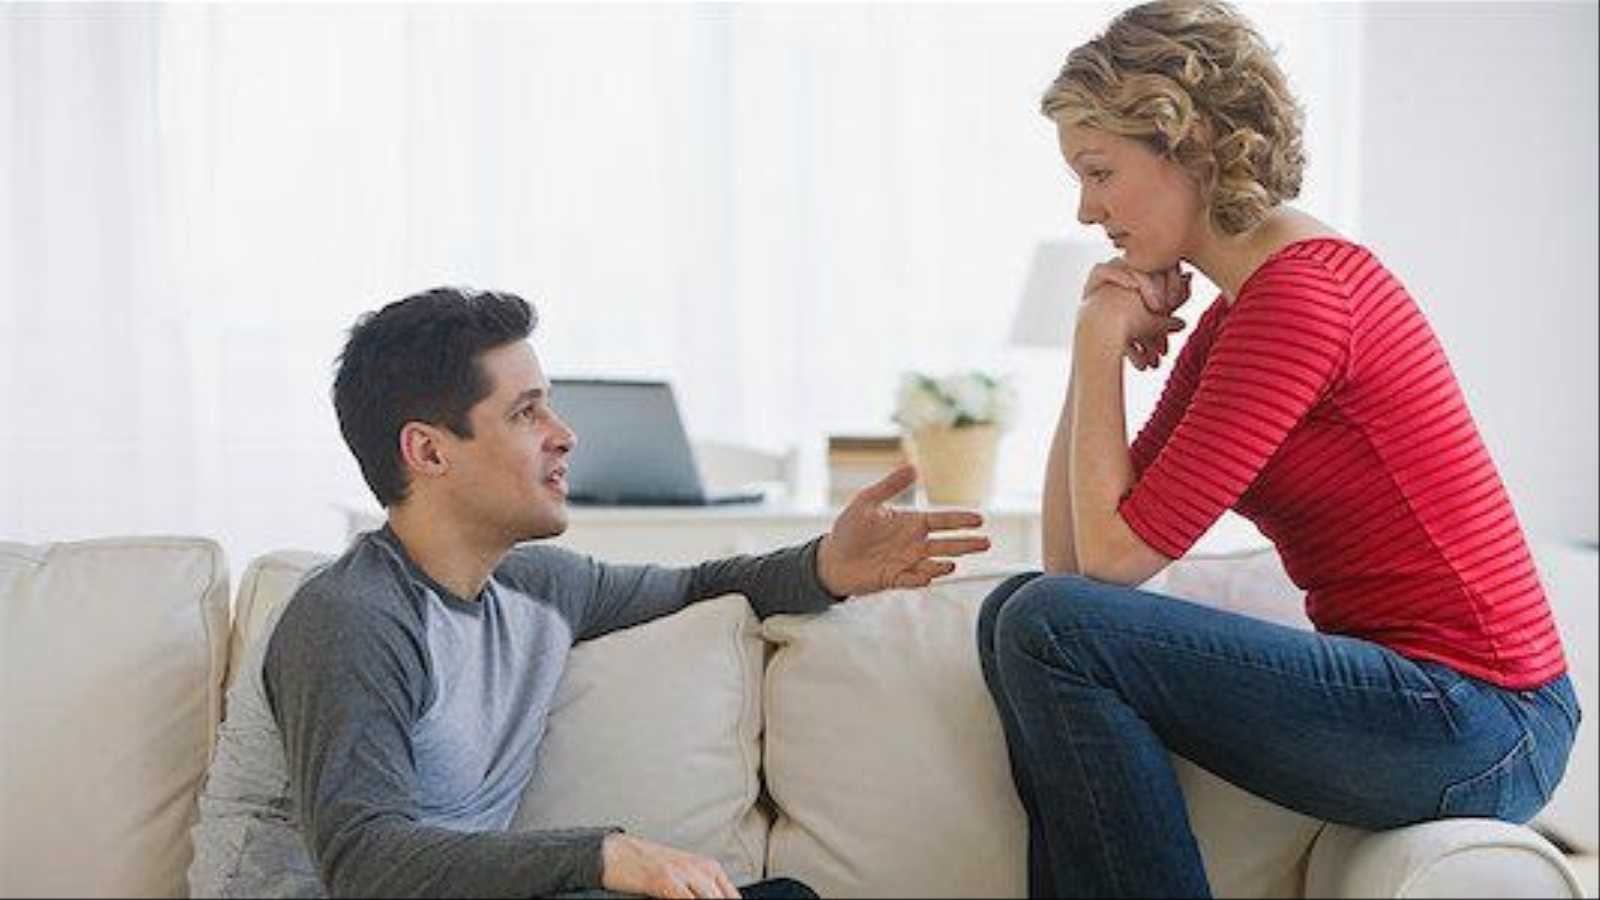 7 признаков, которые помогут распознать неподходящего партнера в самом начале отношений